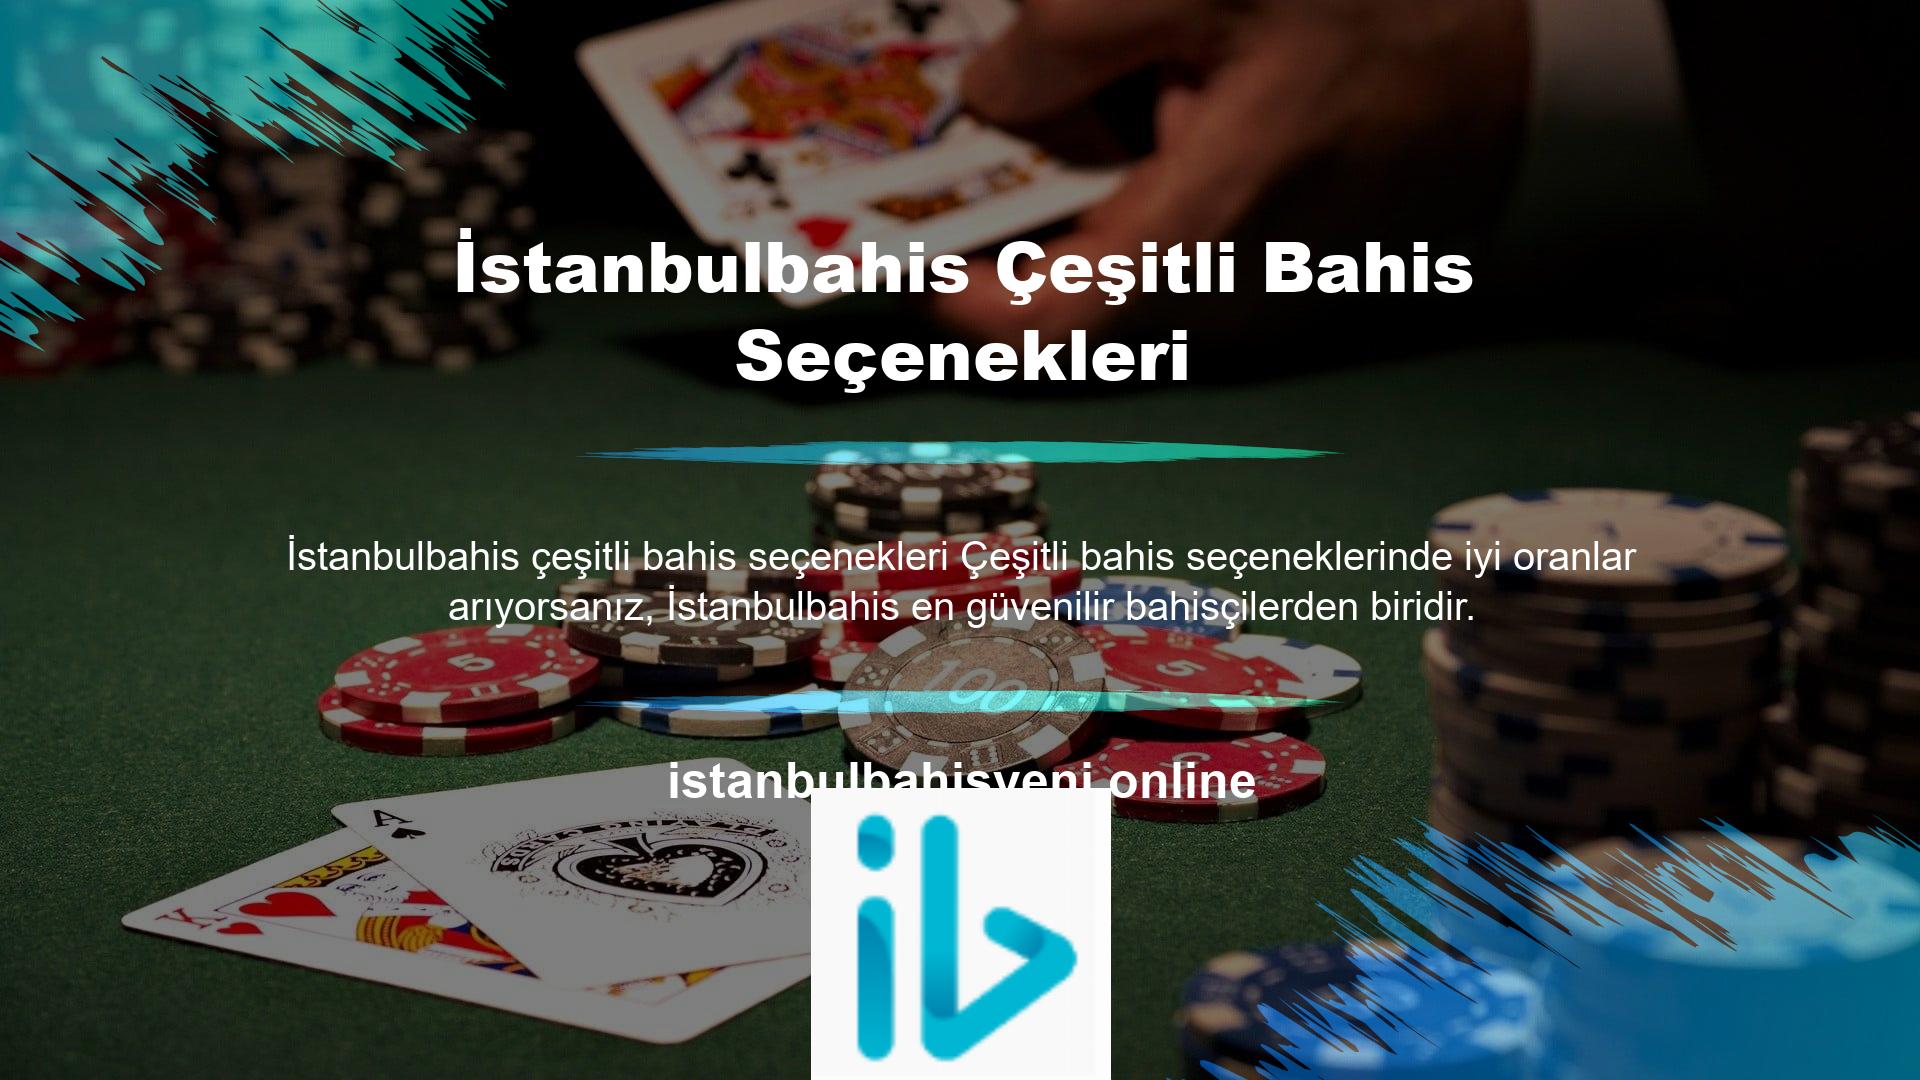 Bu web sitesi Türkiye'de Türkçe dil desteği hizmeti vermektedir, uygun şekilde lisanslanmıştır, sağlam bir altyapıya sahiptir ve dünyanın önde gelen sağlayıcıları tarafından desteklenmektedir